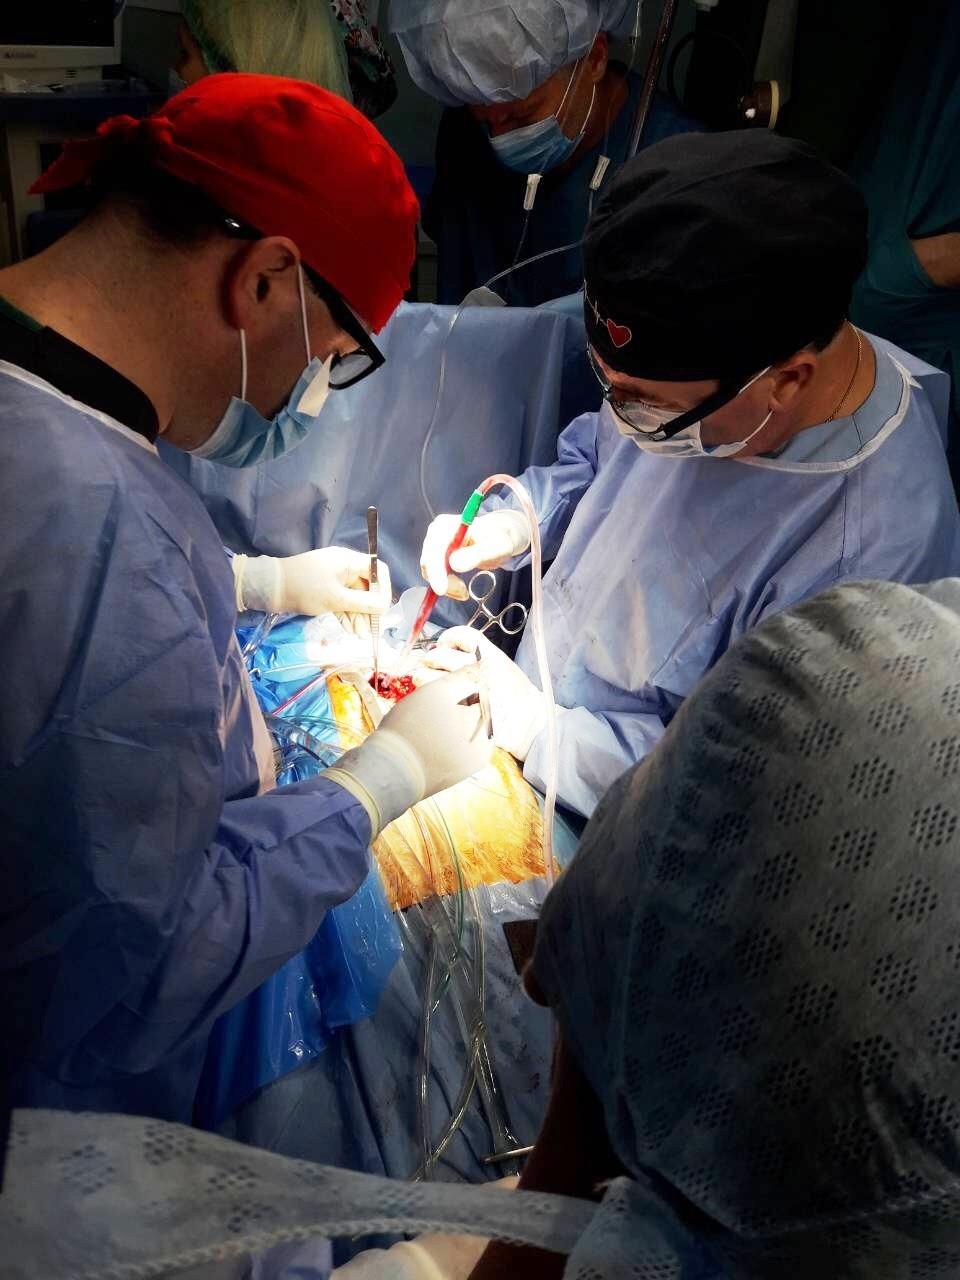 Kardiokirurgjia fillon zëvendësimin e valvules aortale me metoda minimale invazive